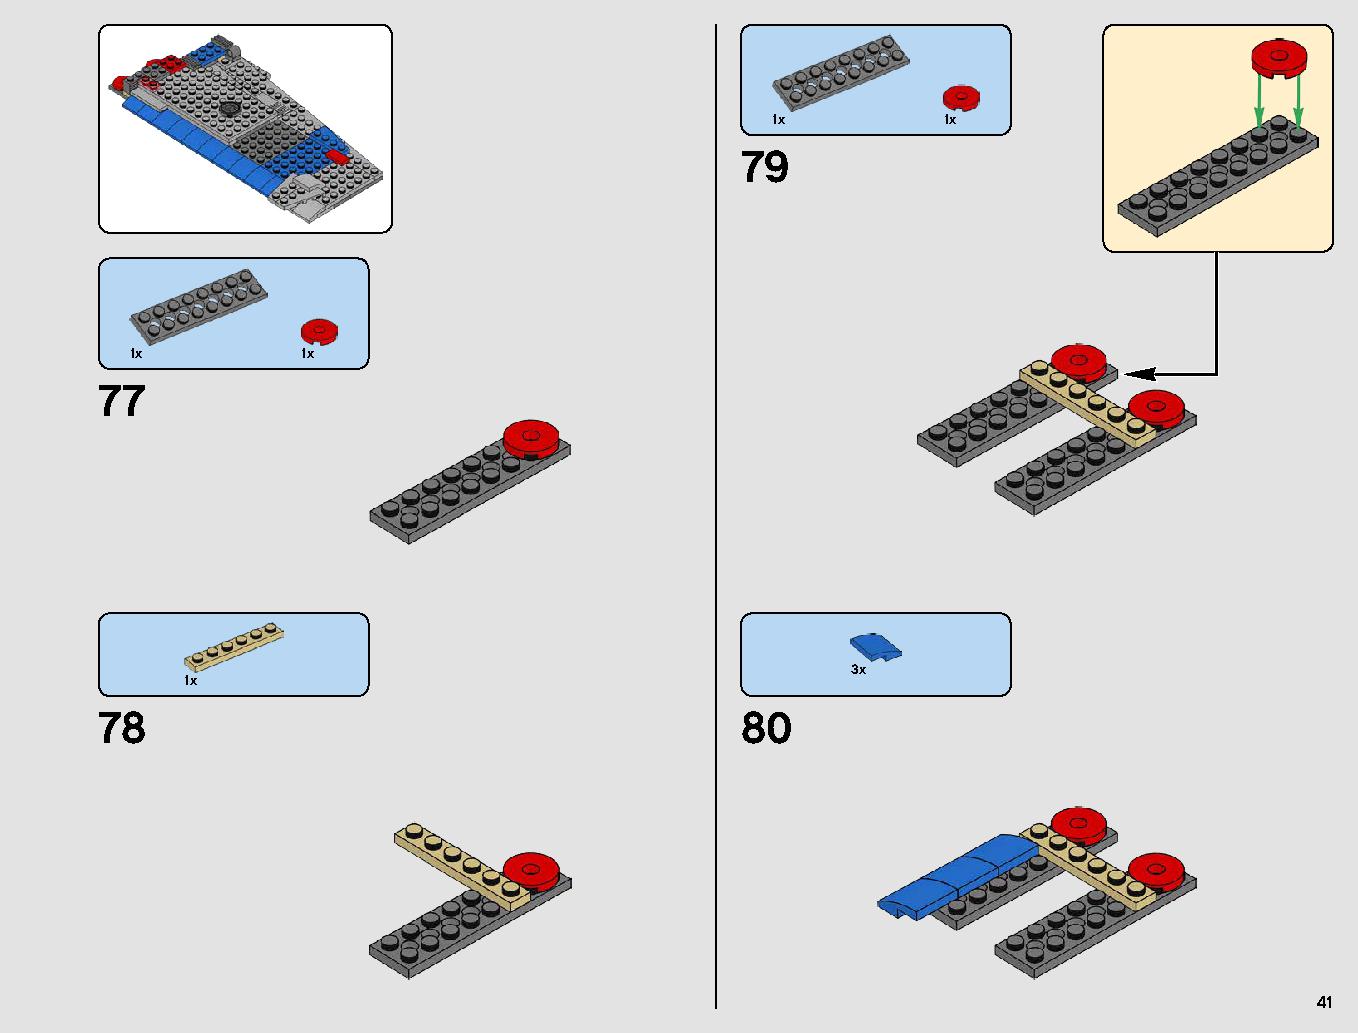 レジスタンス・ボマー 75188 レゴの商品情報 レゴの説明書・組立方法 41 page